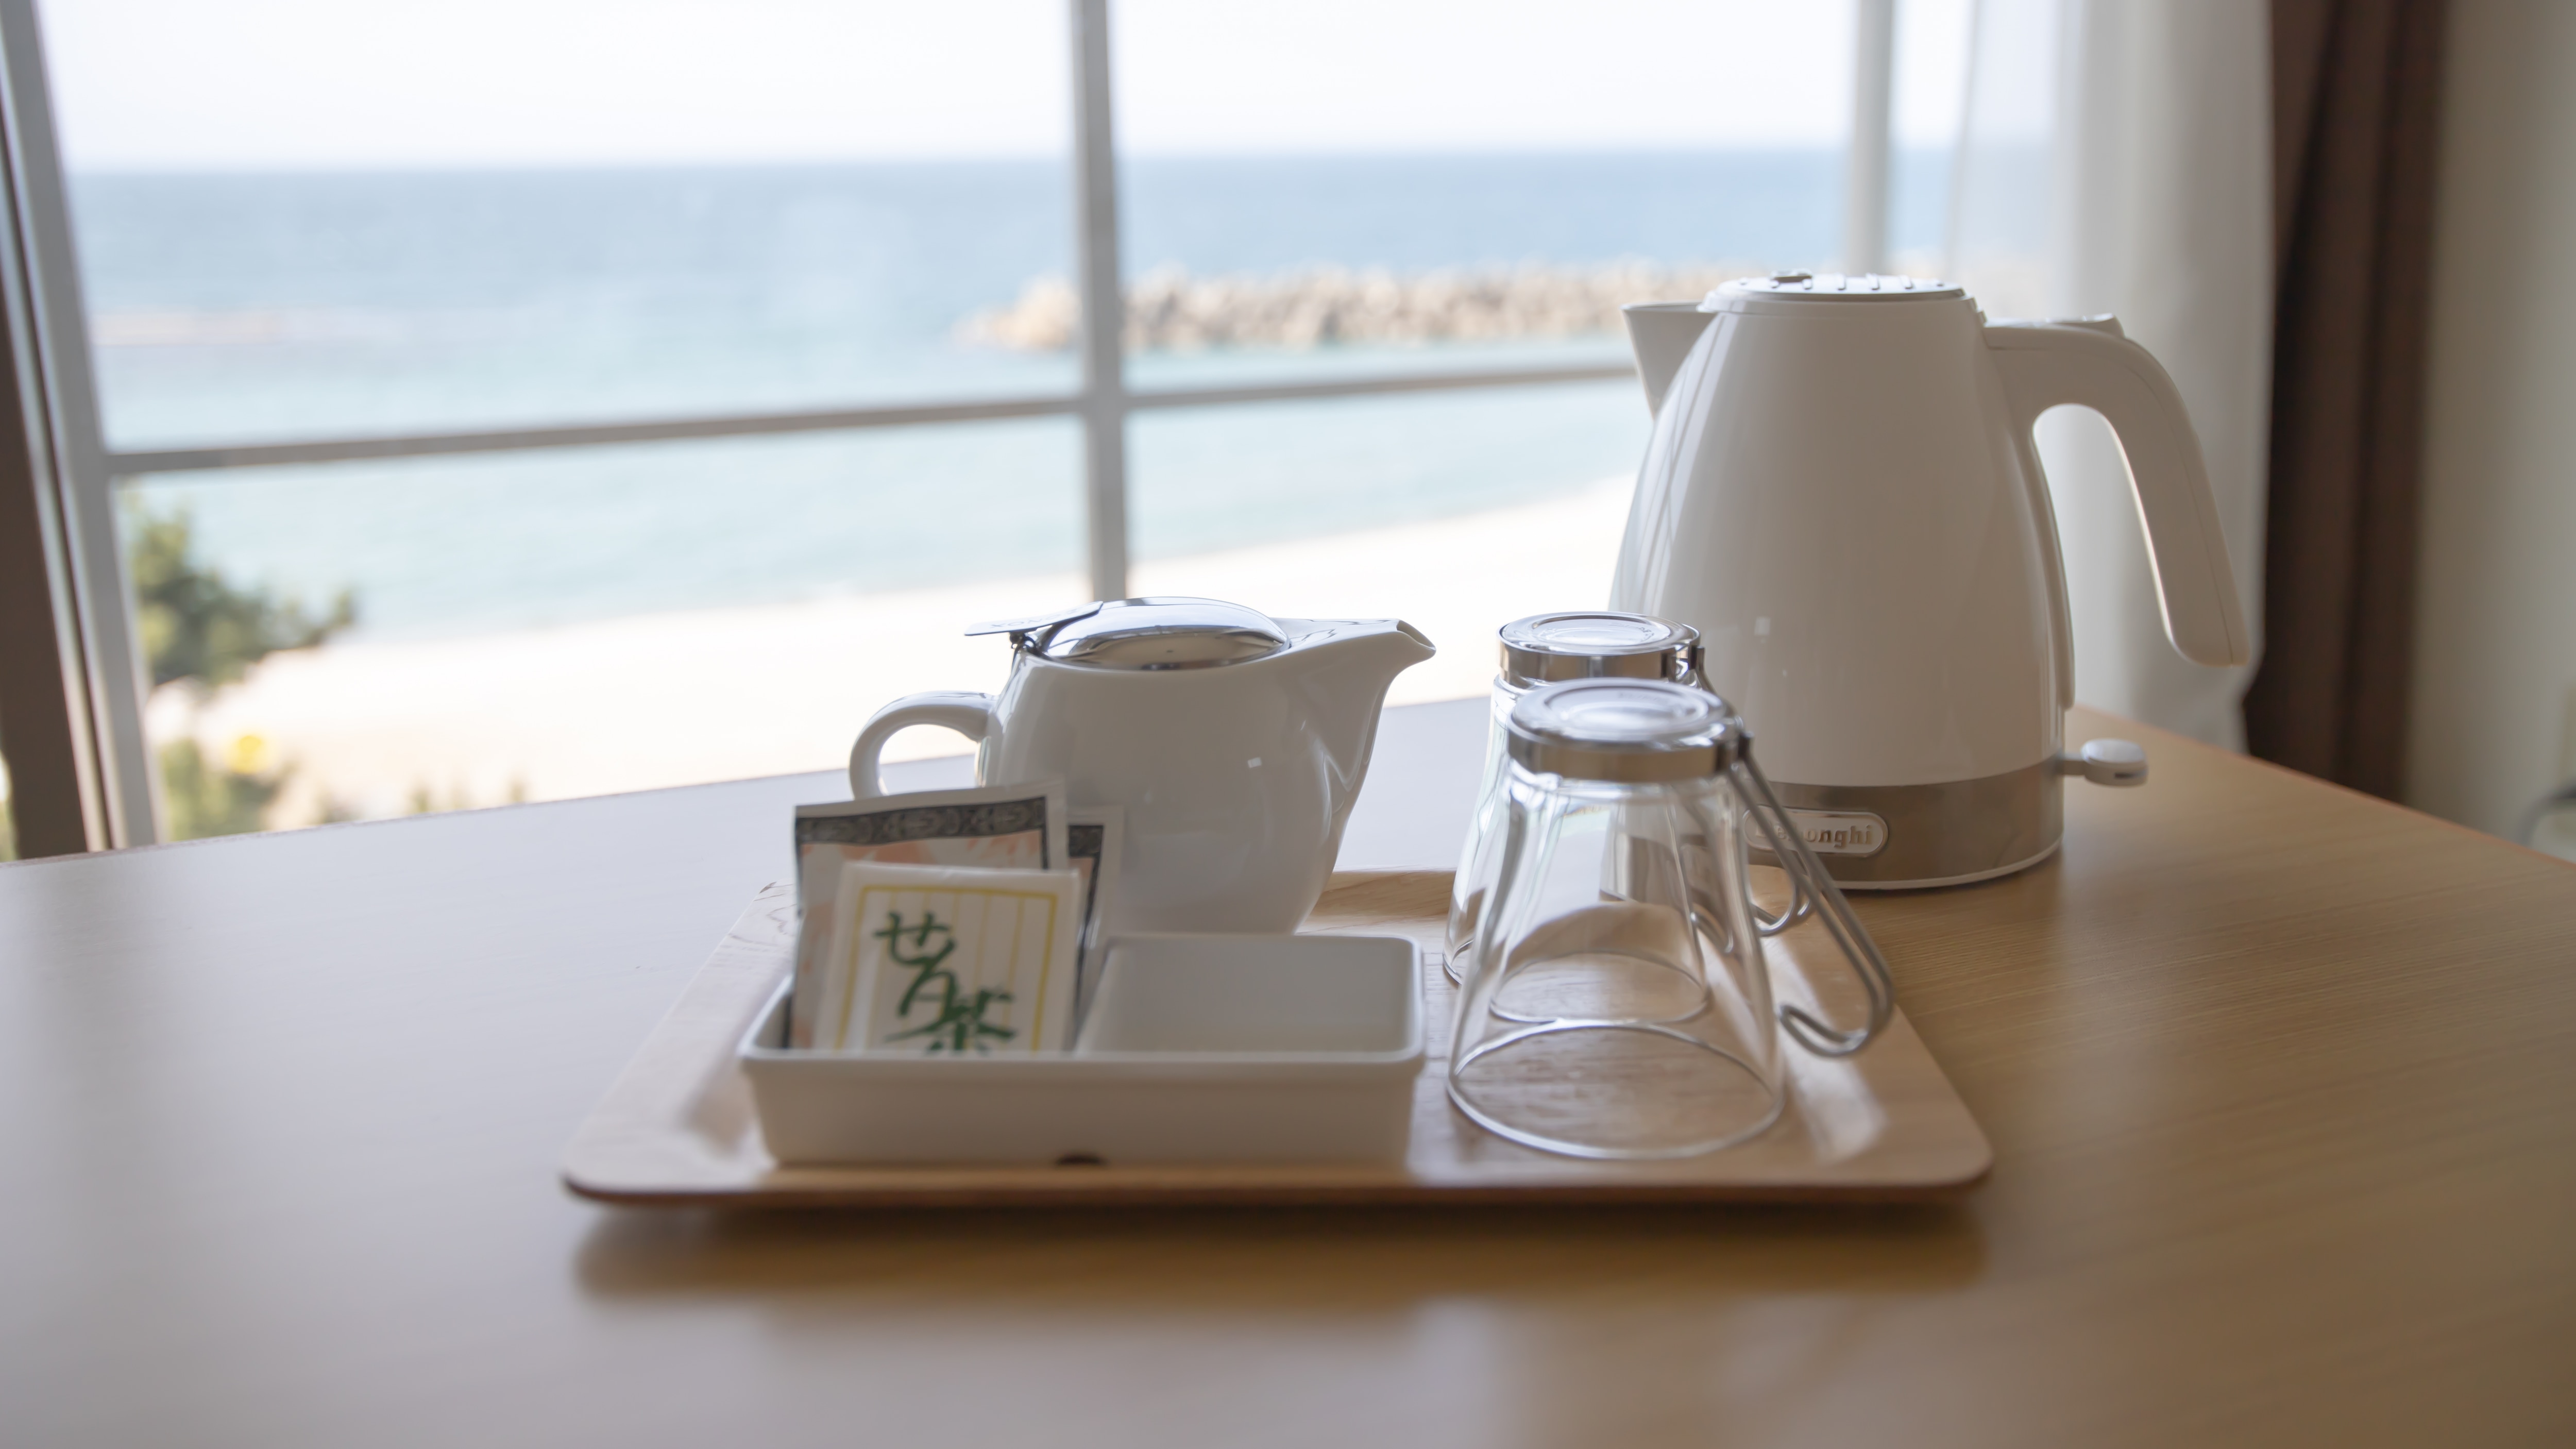 Ocean view & tatami tea set